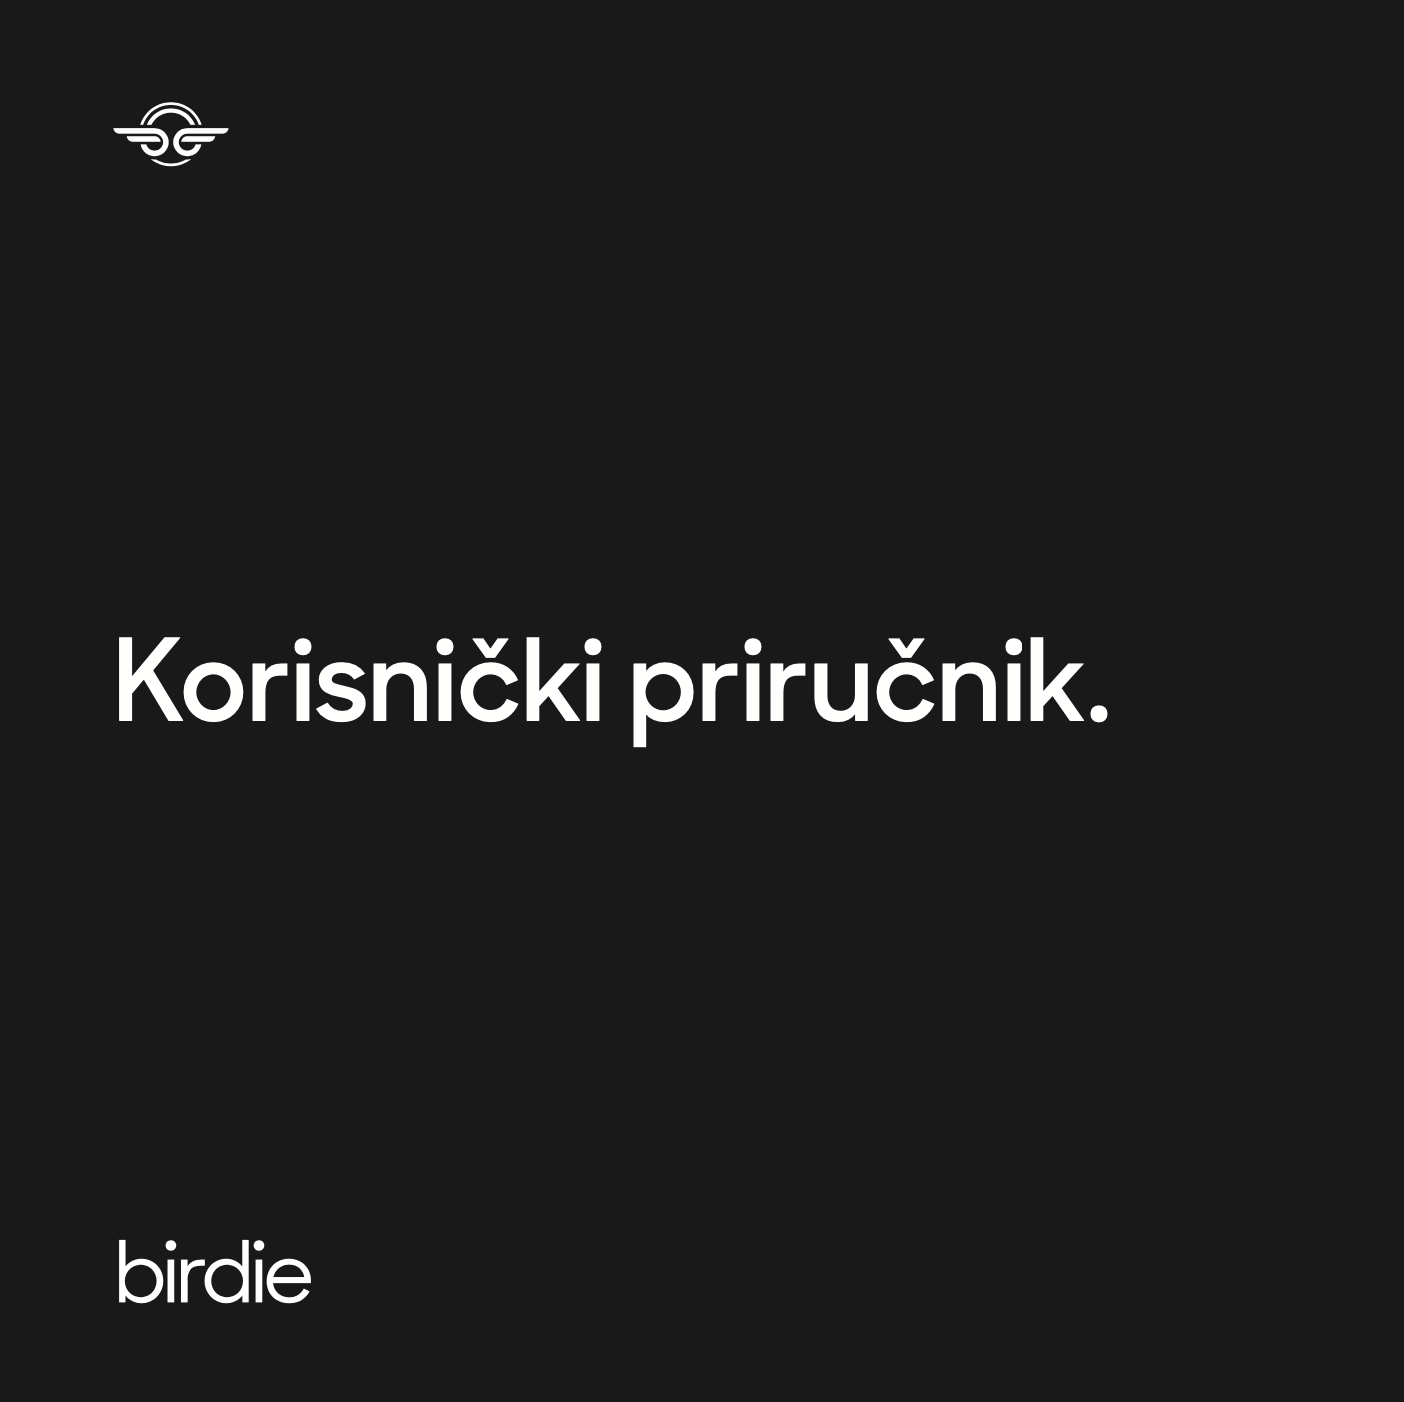 Birdie_Cover_-_Croatian.png